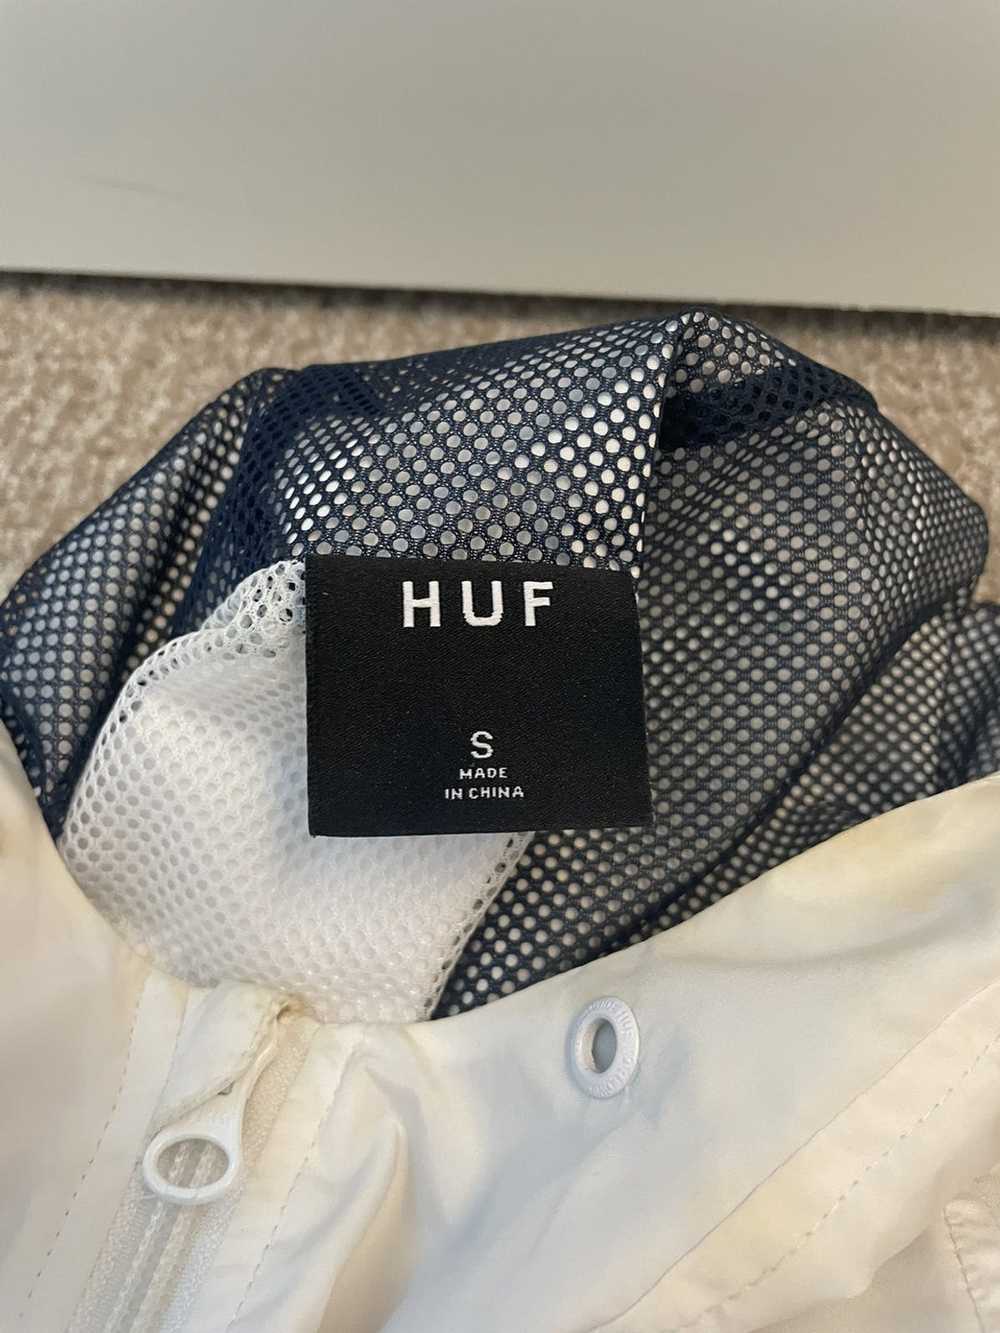 Huf HUF Peak 3.0 Anorak Jacket, Men’s Small - image 4